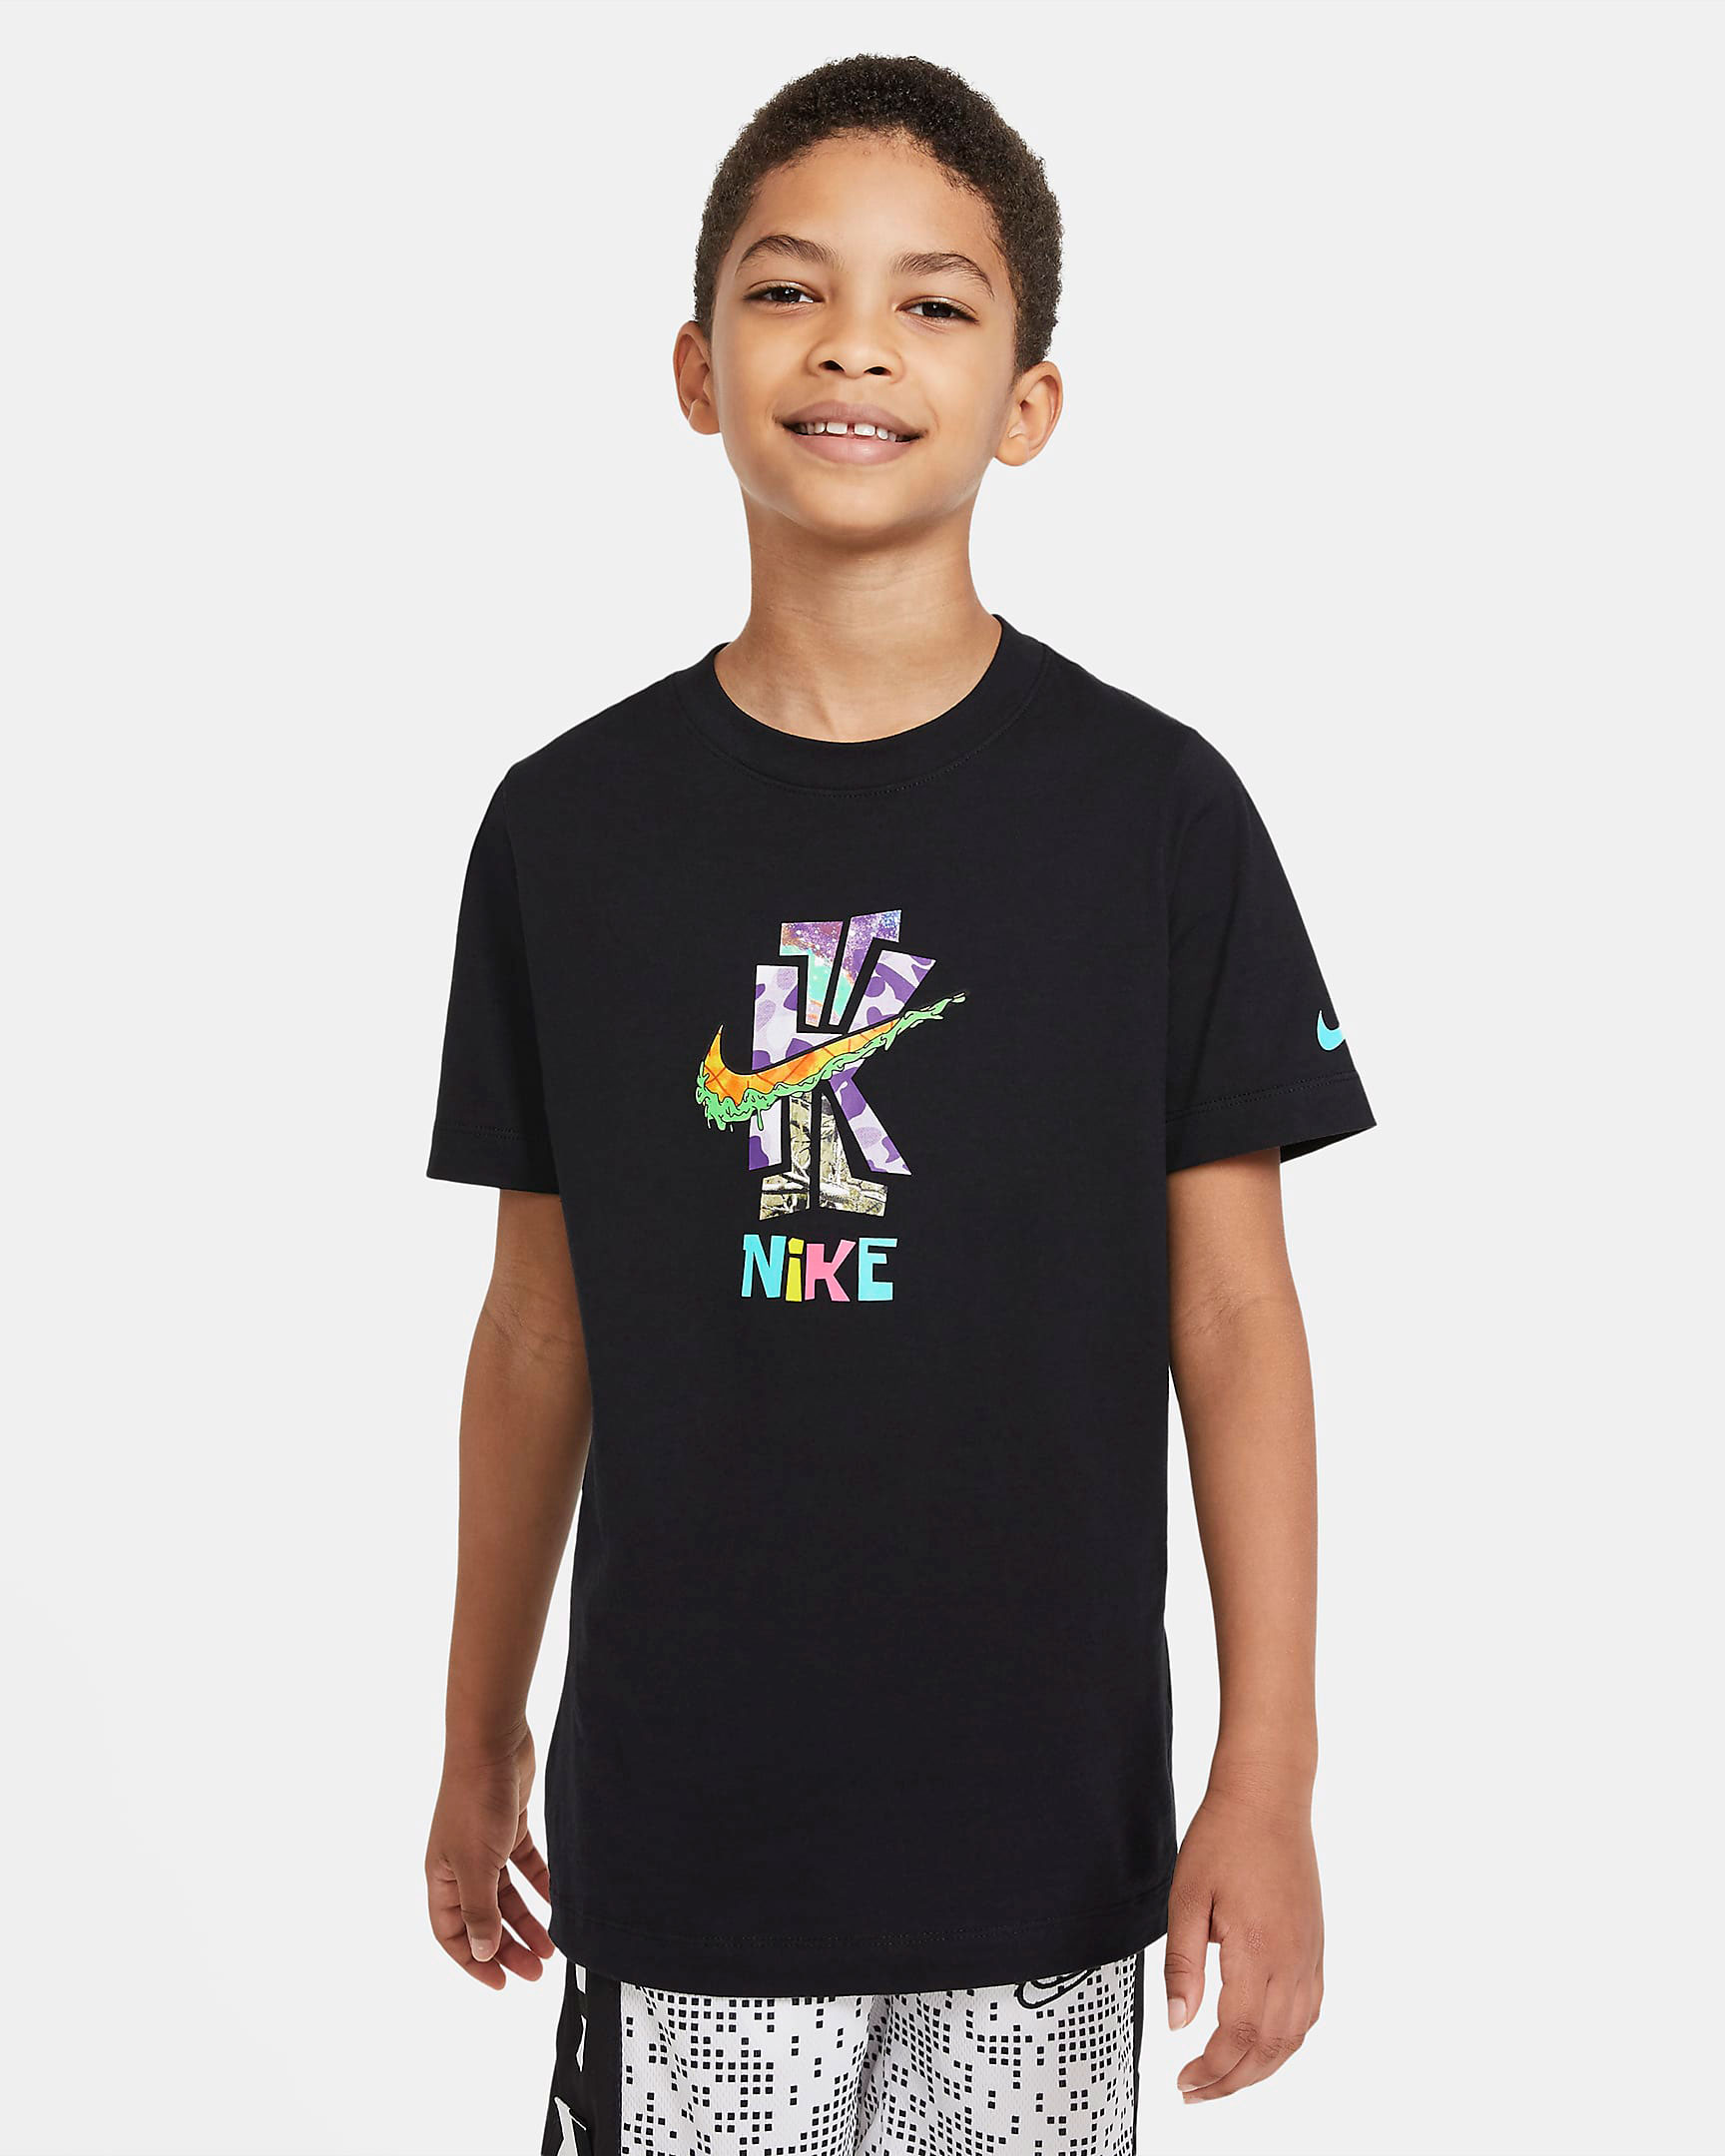 nike-kybrid-s2-pineapple-best-of-kids-shirt-black